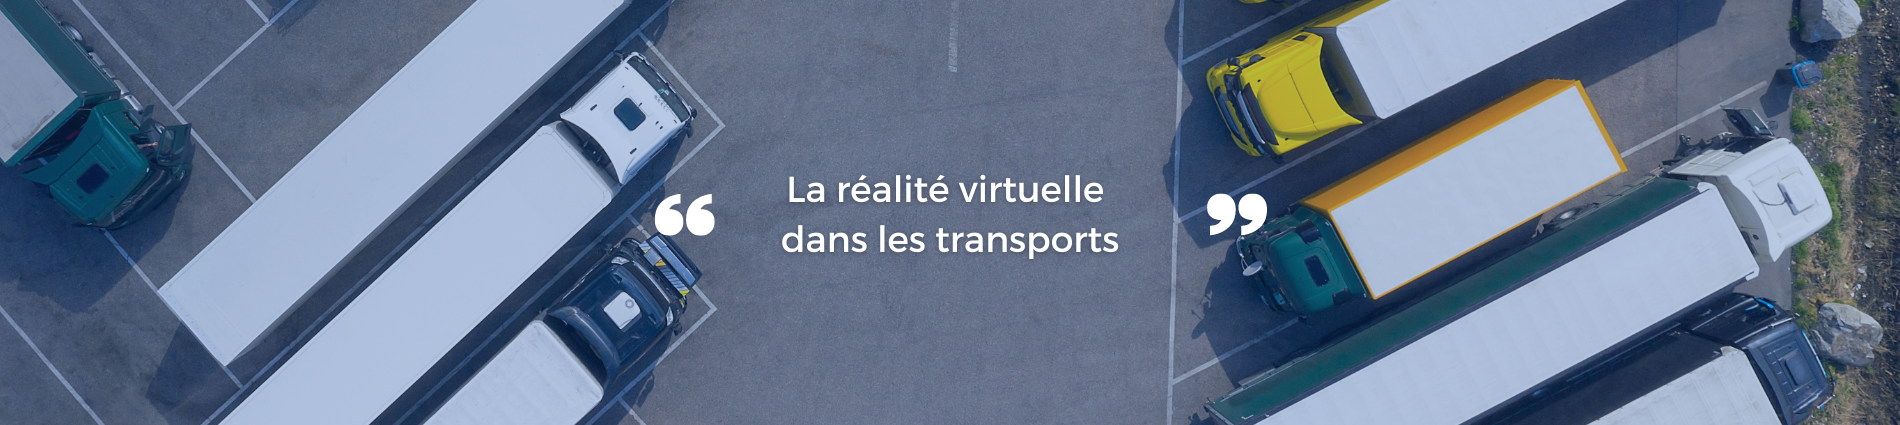 La réalité virtuelle dans les transports